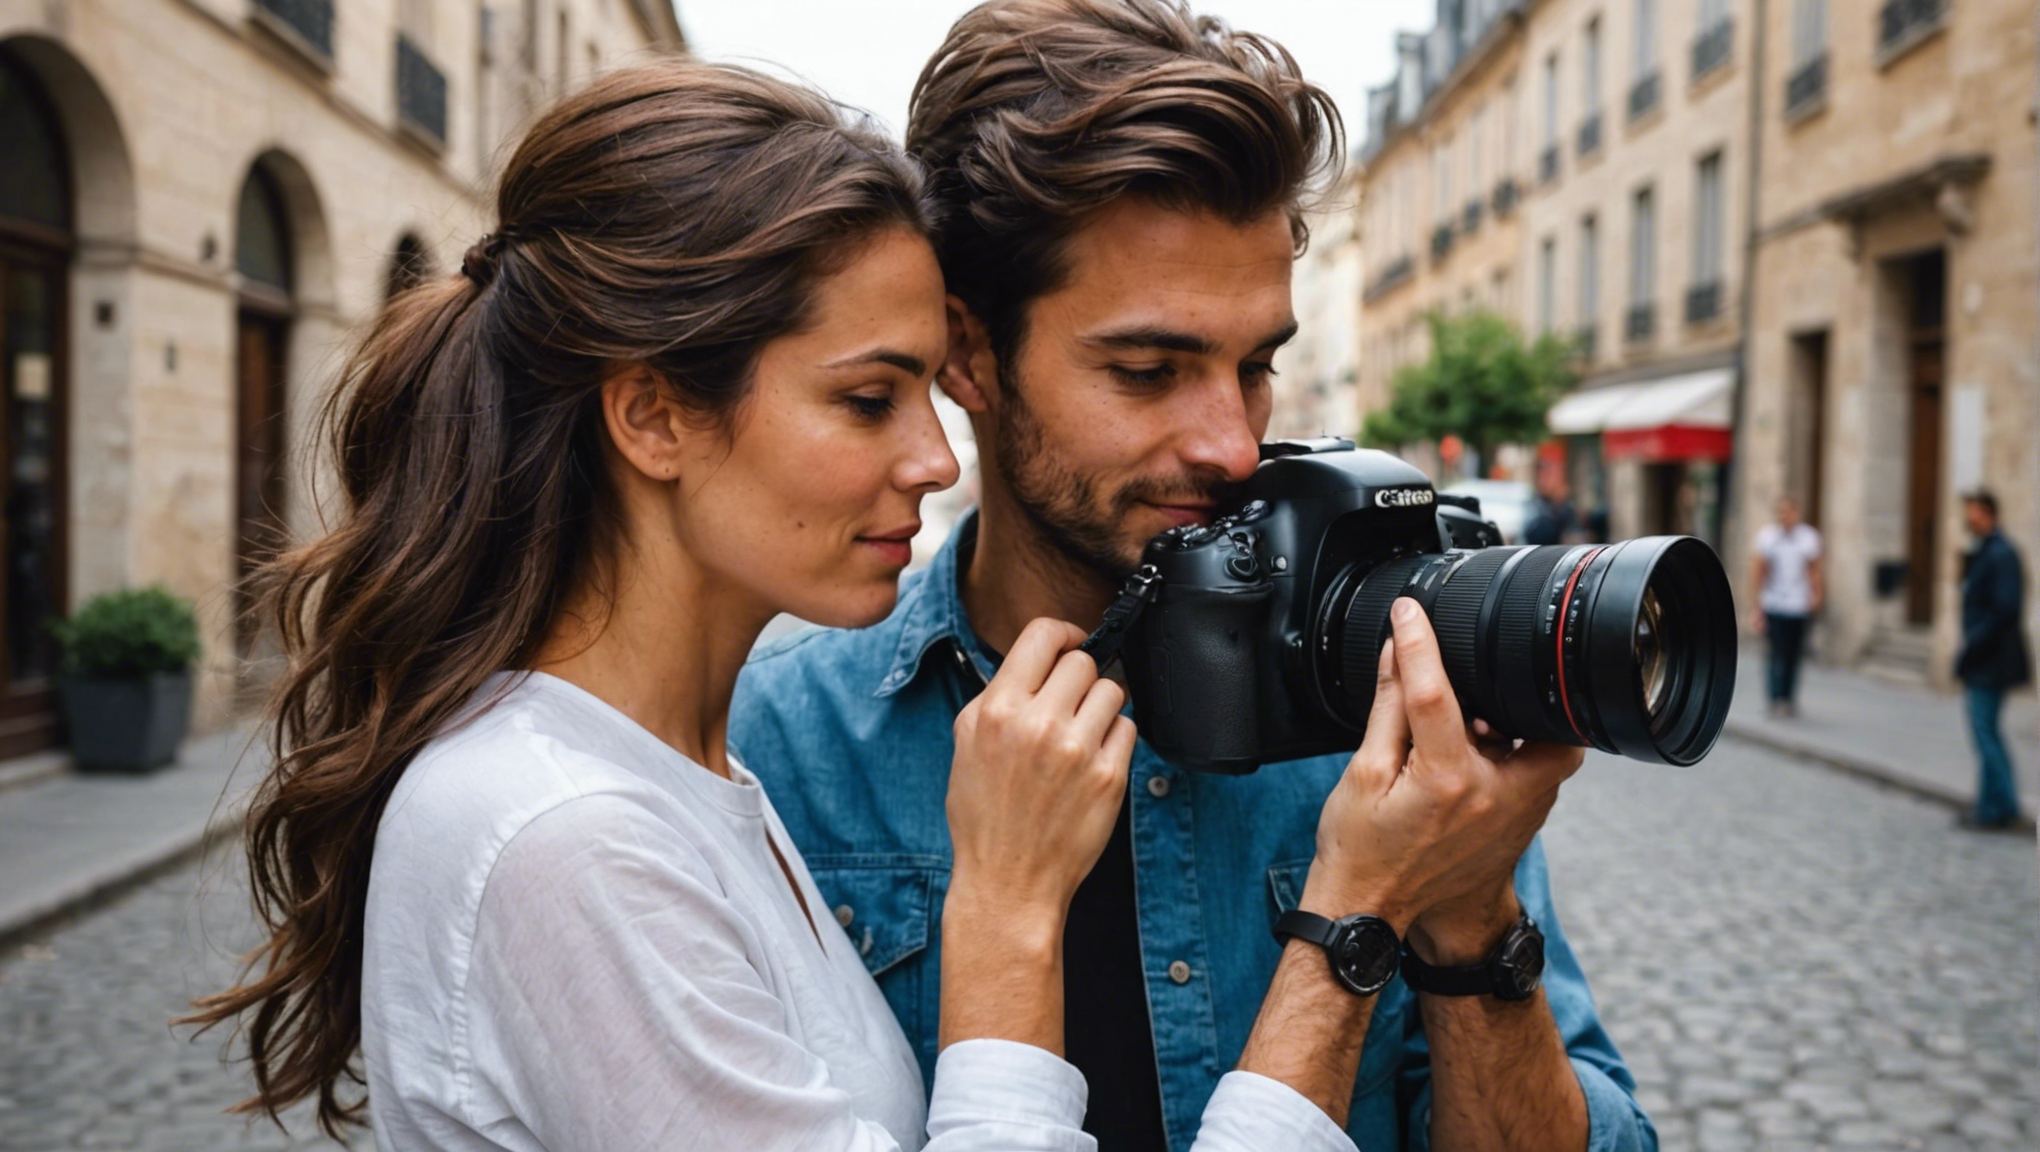 découvrez nos conseils pour choisir le photographe parfait qui saura capturer l'essence de votre amour pour des souvenirs inoubliables.